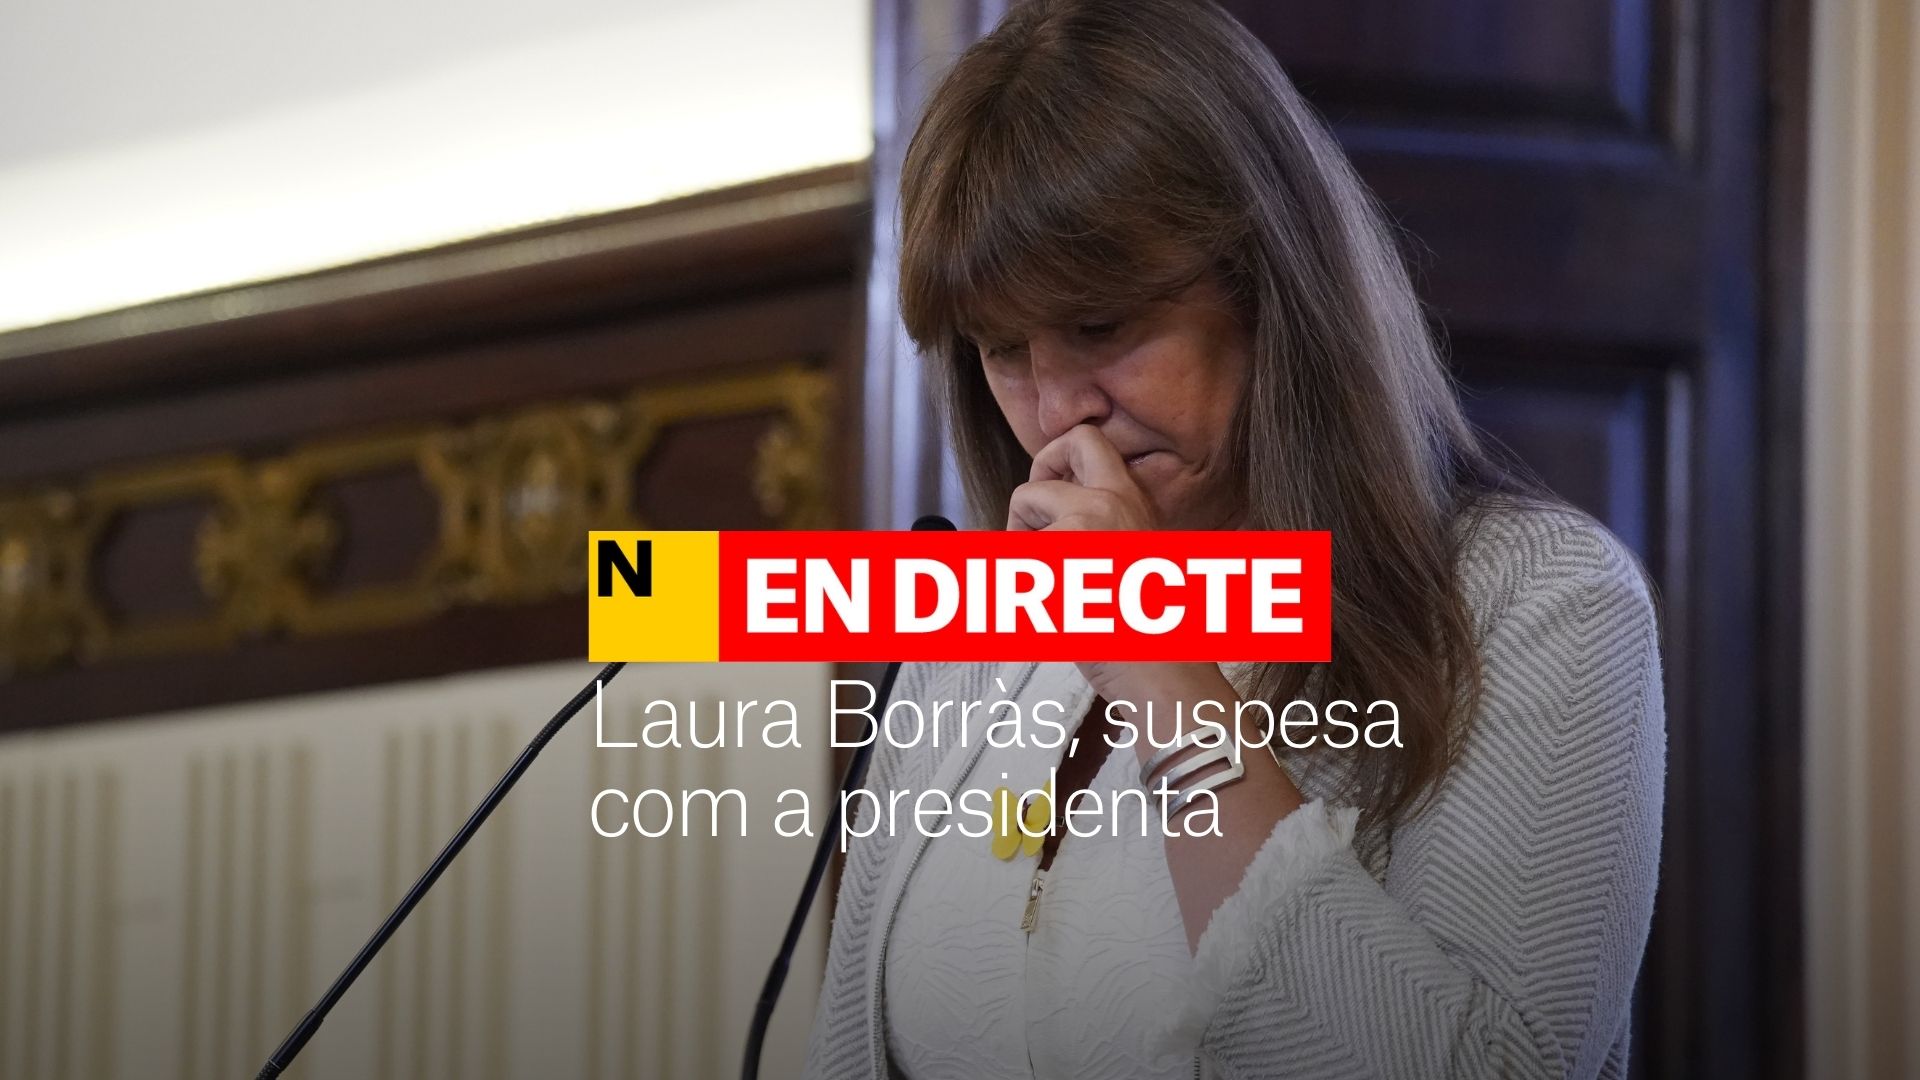 Laura Borràs, suspesa com a presidenta del Parlament, DIRECTE